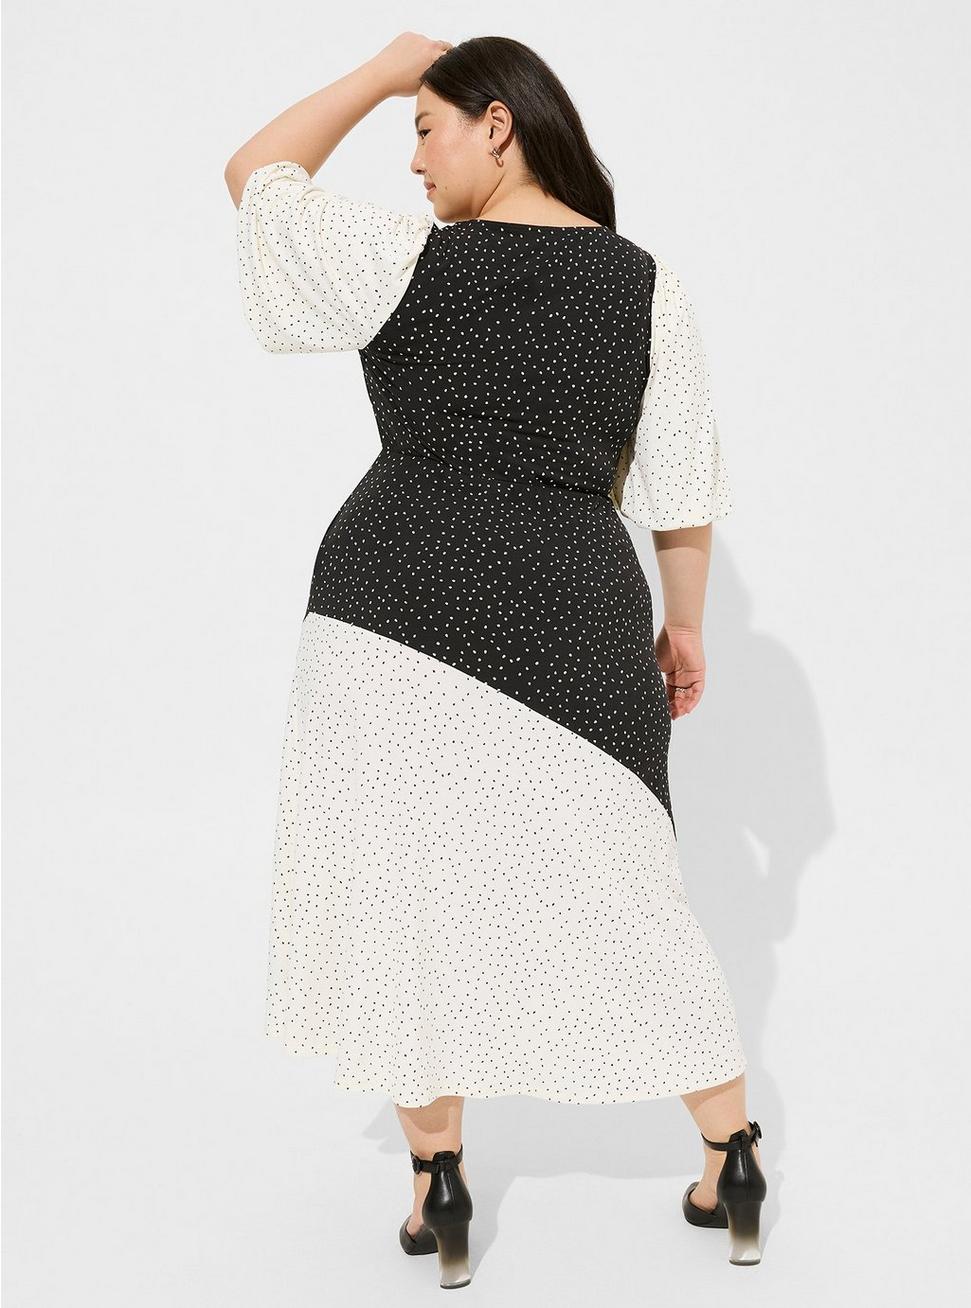 Maxi Studio Knit Mix Print Dress, DOT PRINT, alternate